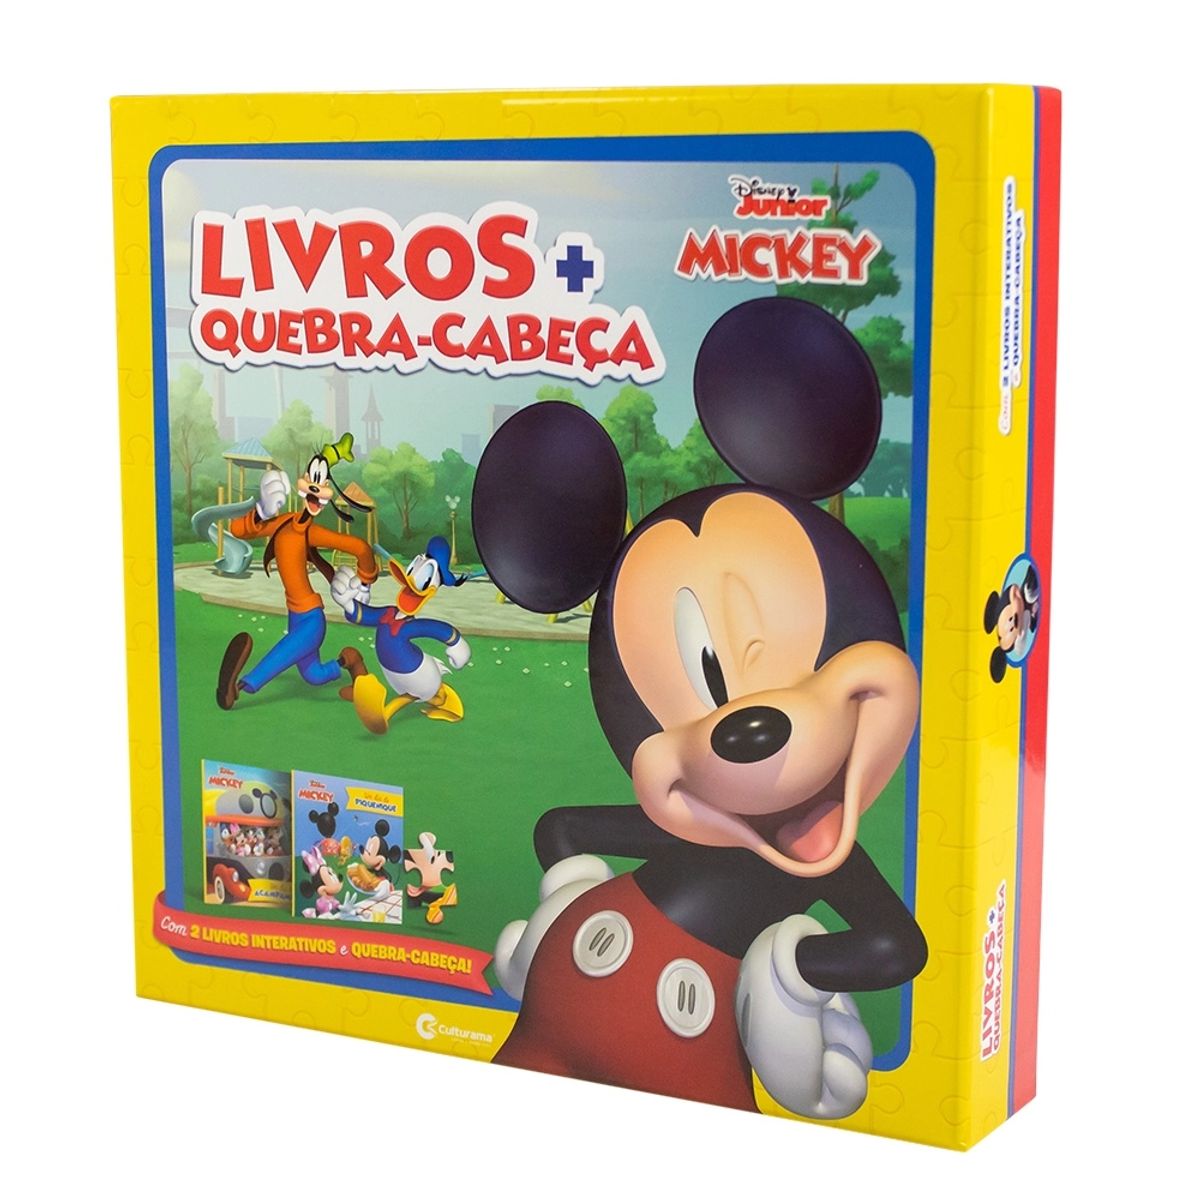 Box de Livros + Quebra-Cabeça Culturama Mickey